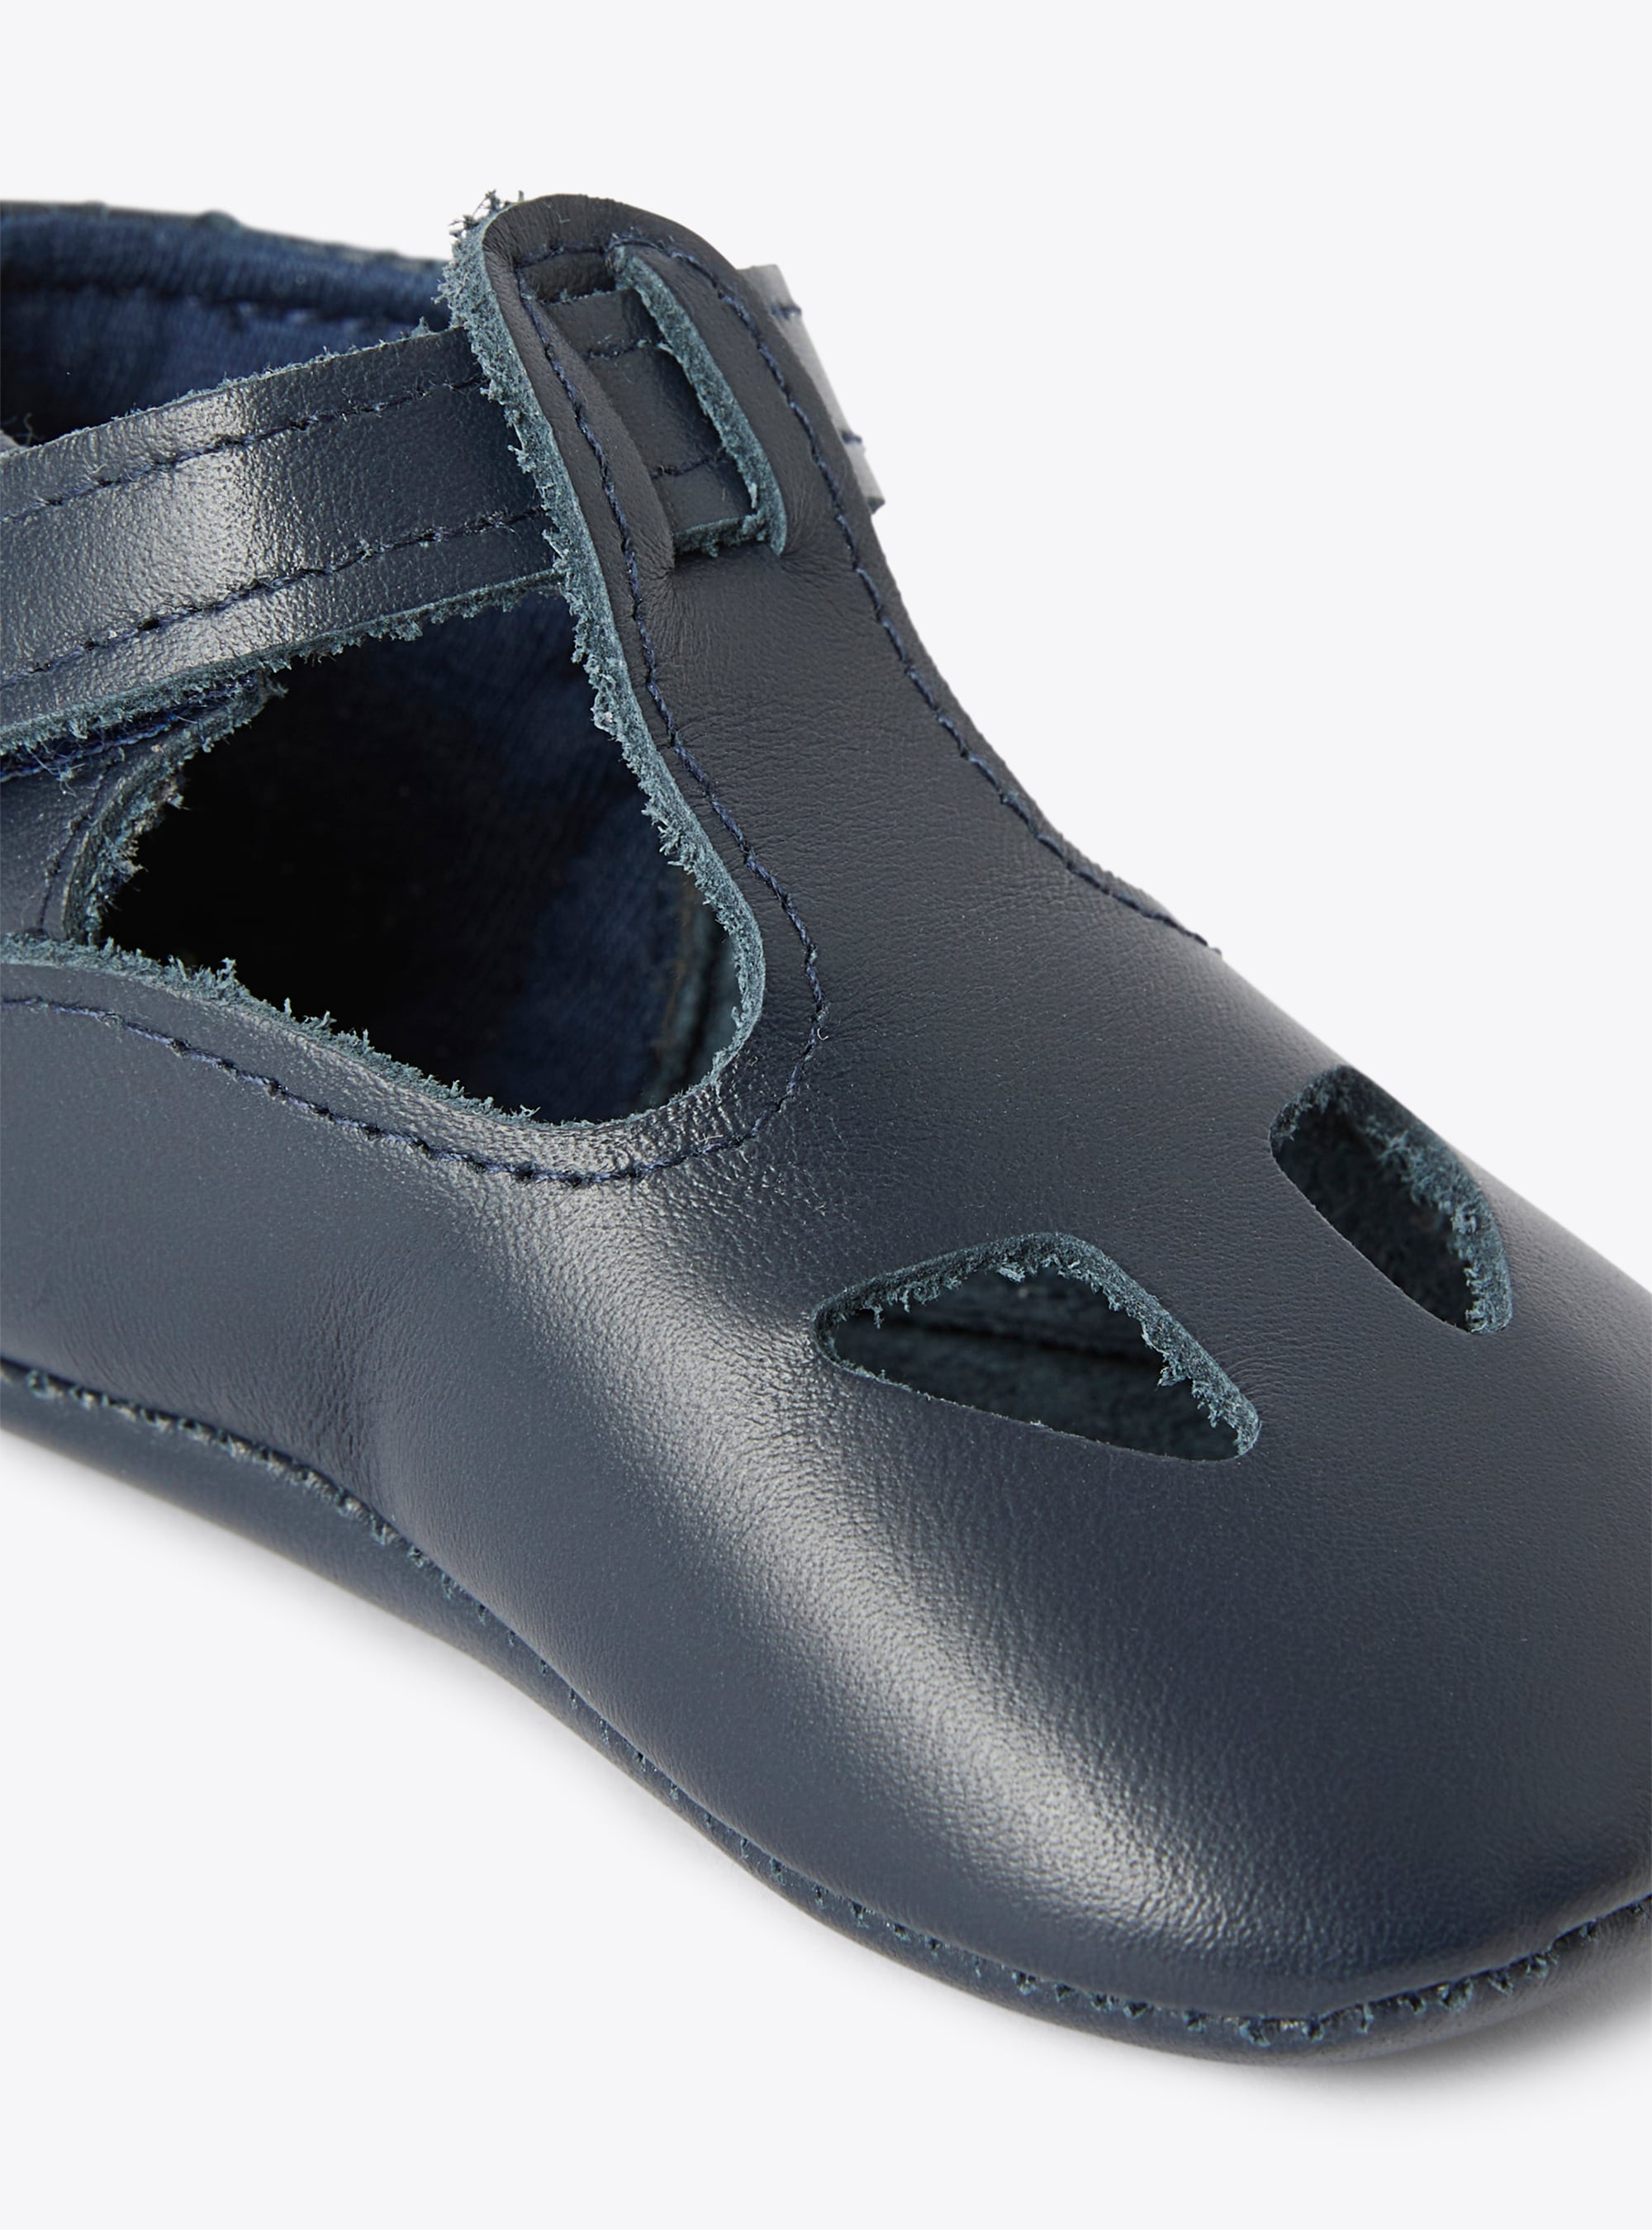 Синие ботиночки из кожи наппа для новорожденного - СИНИЙ | Il Gufo